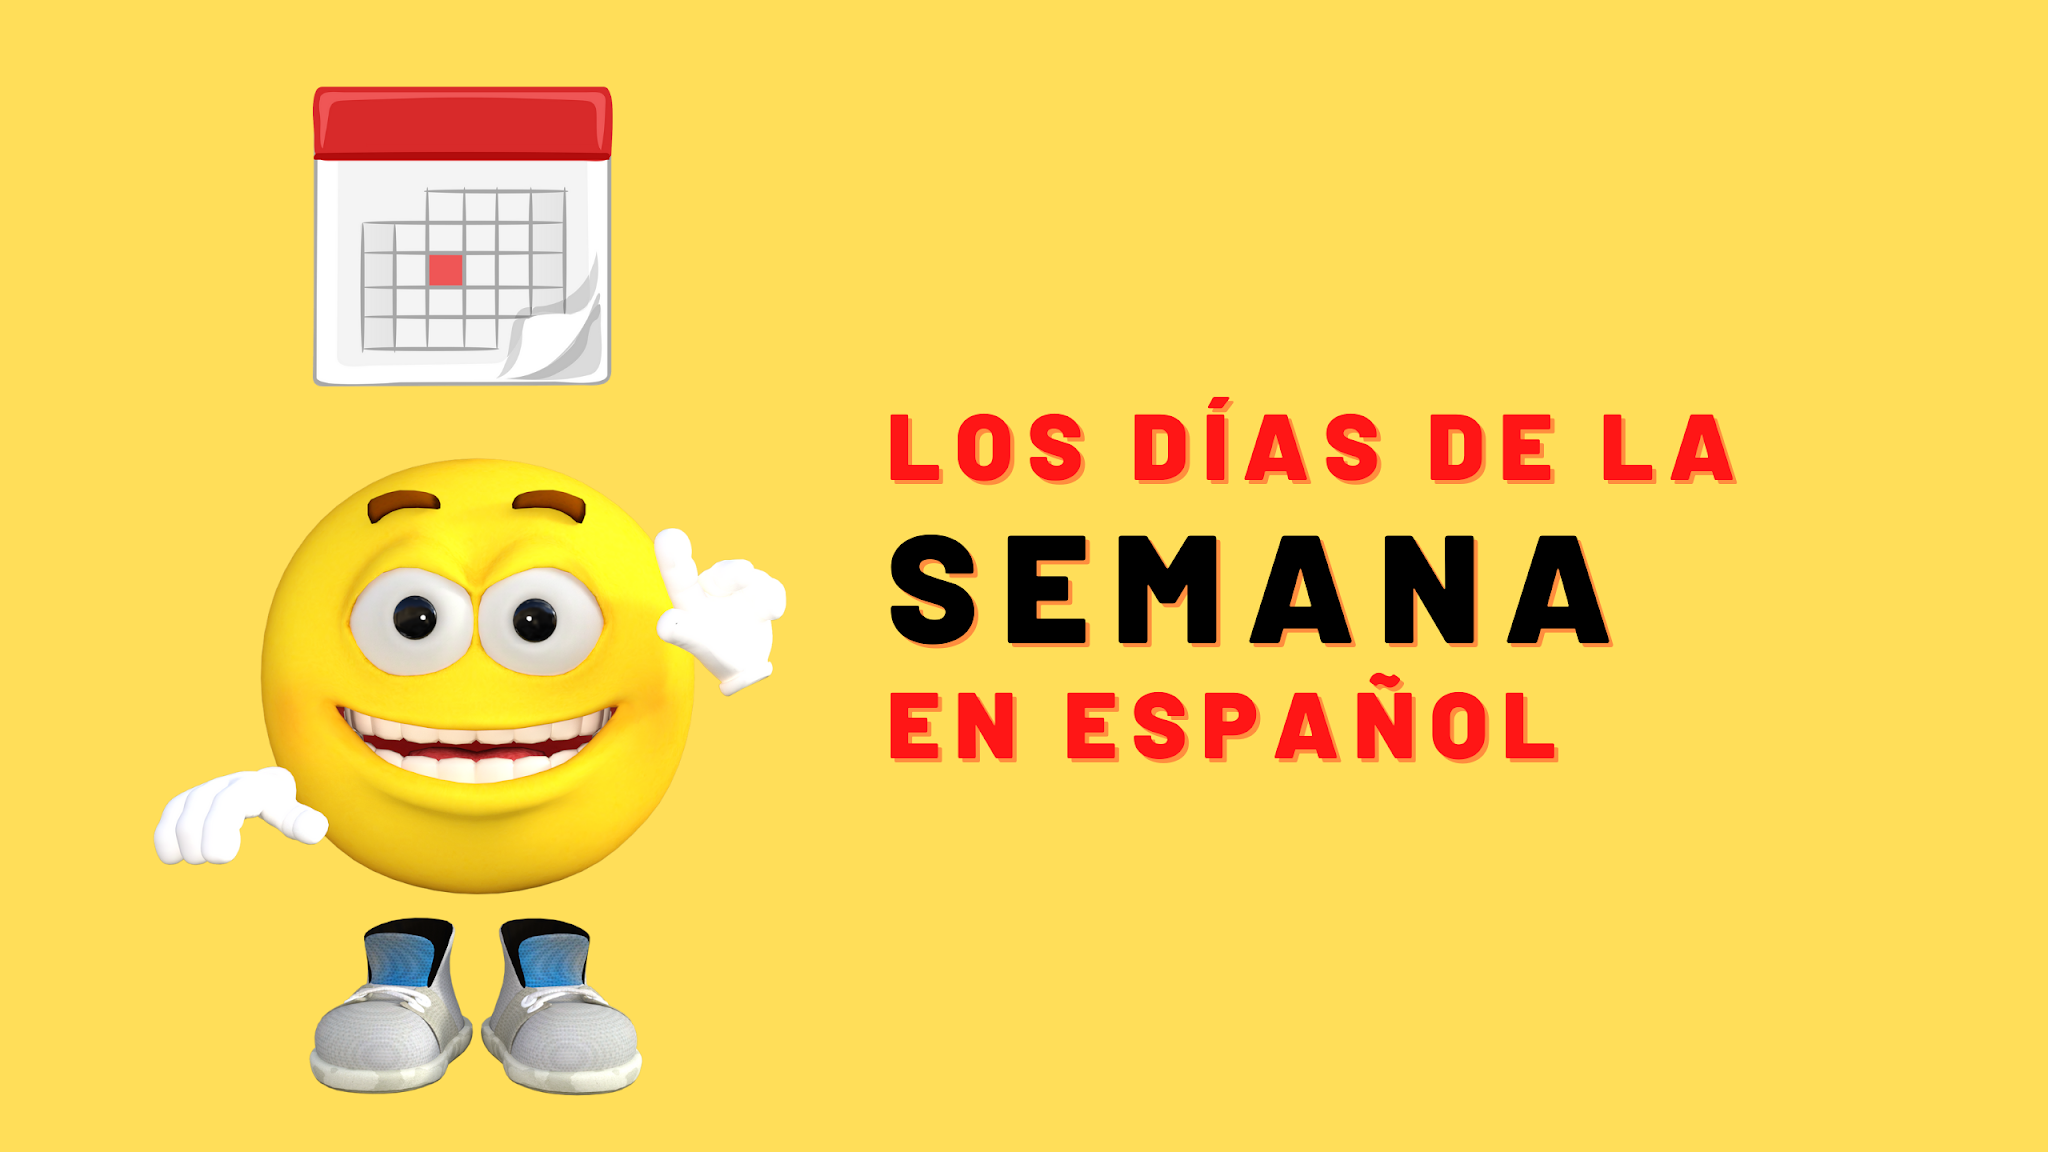 Dias da semana em espanhol - Días de la semana - Toda Matéria